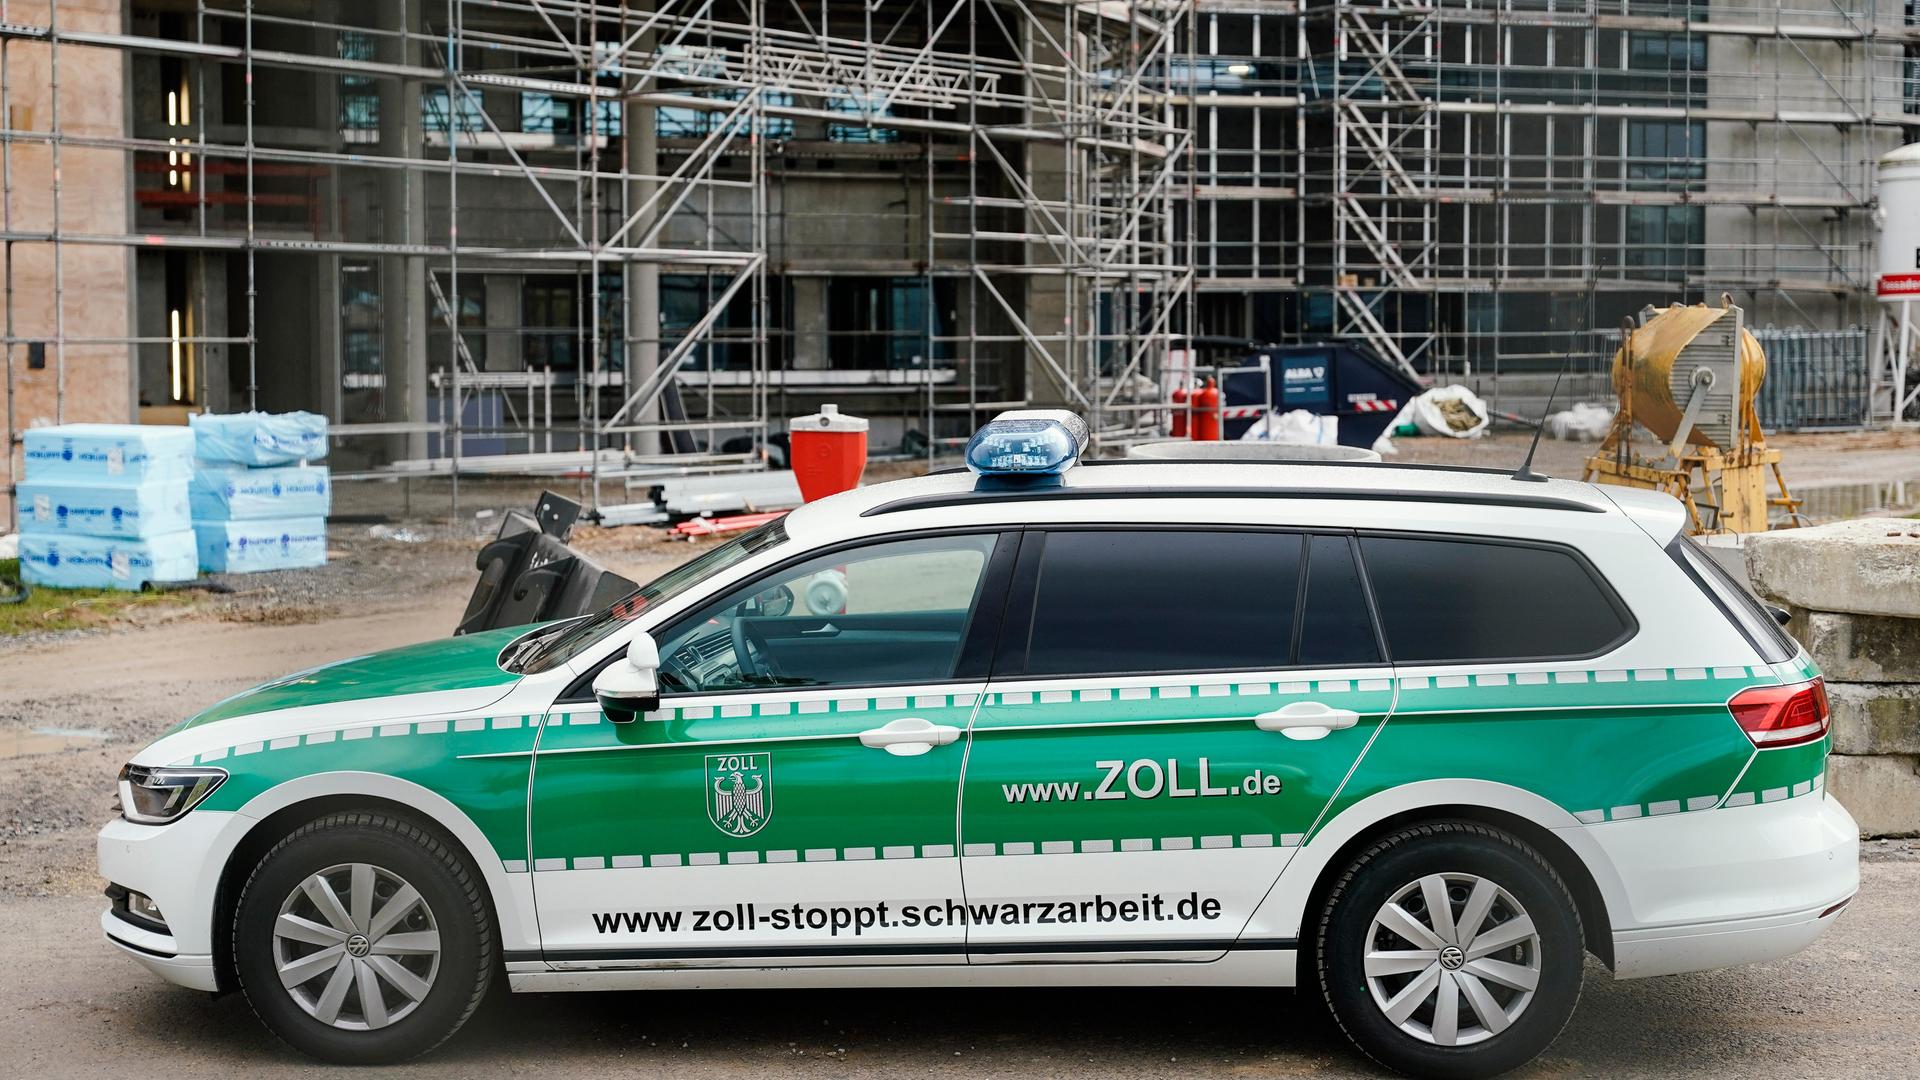 Ein Einsatzfahrzeug des Zolls mit der Aufschrift www.zoll-stoppt.schwarzarbeit.de steht bei einer Kontrolle auf einer Baustelle.